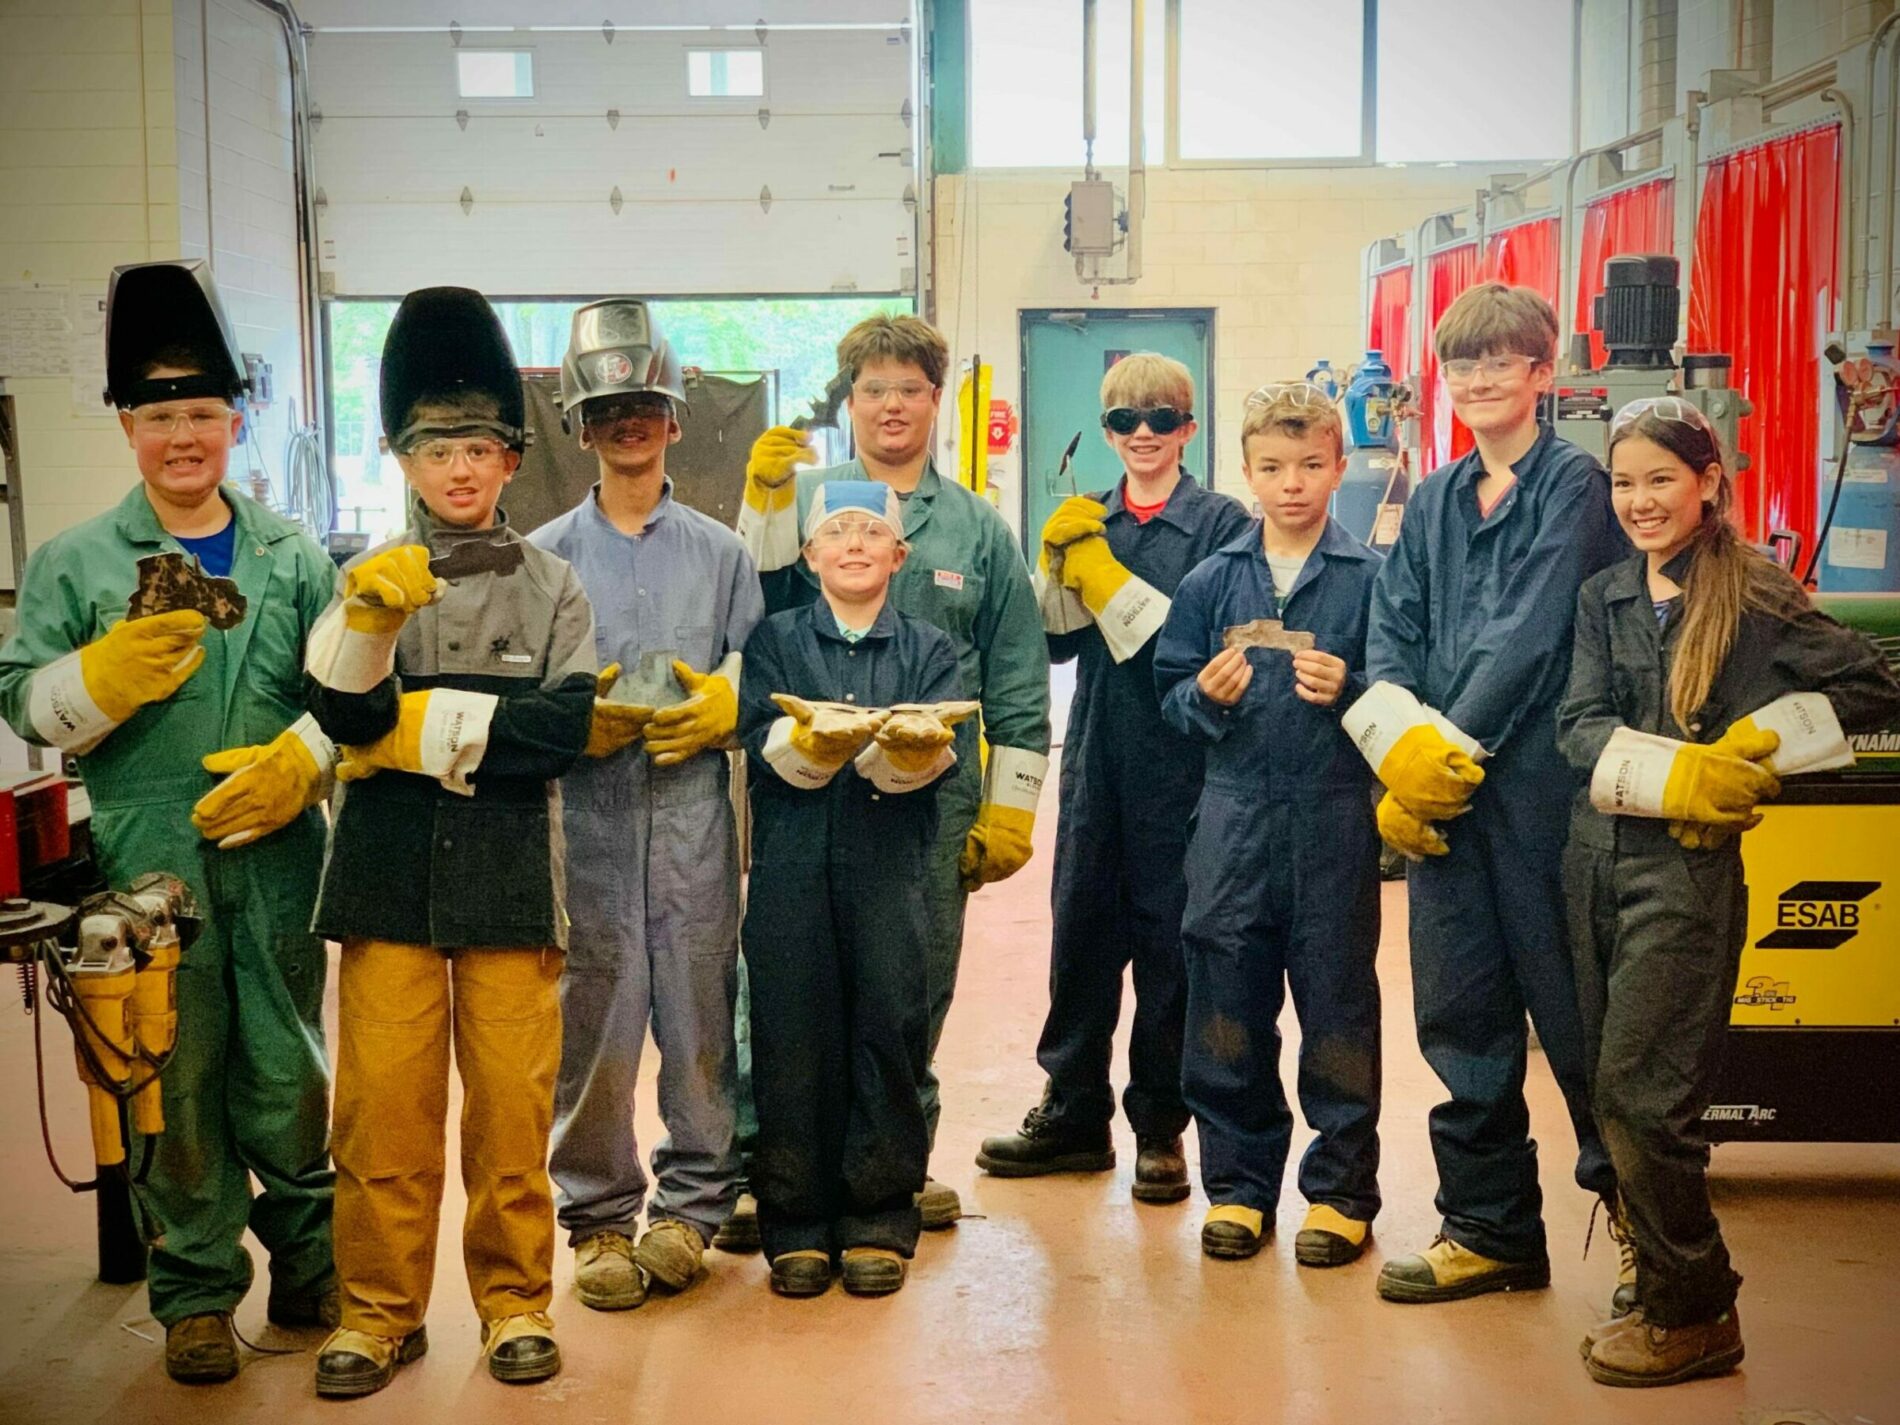 Kids in welding equipment holding welded parts